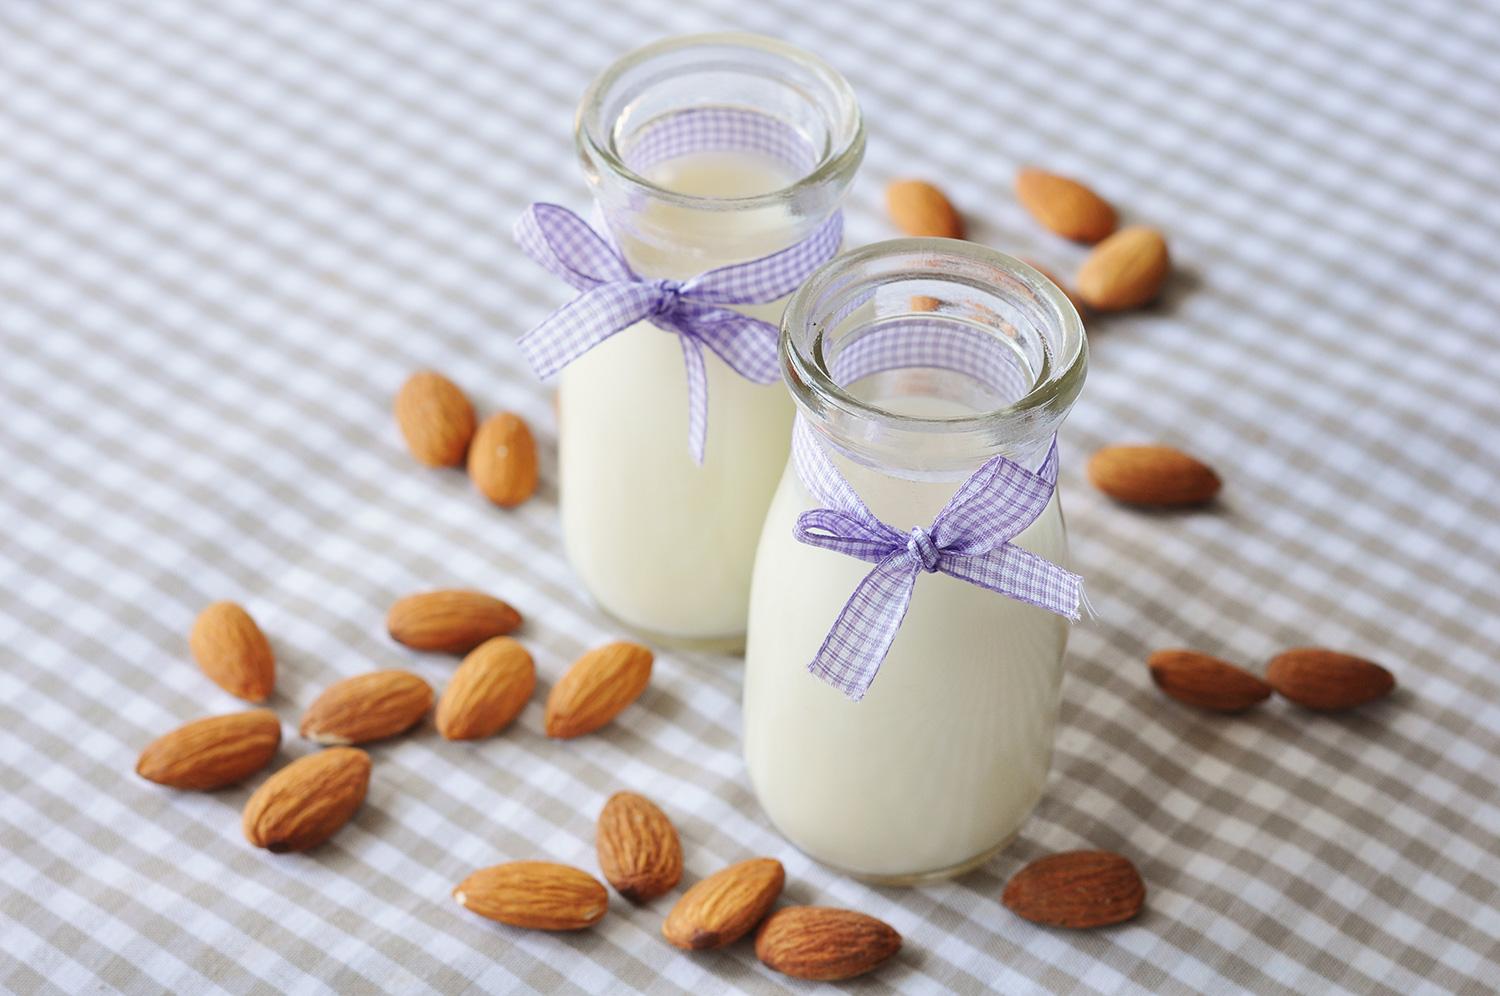 Mandelmjölk Vissa studier hävdar att det finns ett samband mellan komjölk och akne på grund av de hormoner som följer med på köpet. Testa att byta ut till mandelmjölk som innehåller E-vitamin – en antioxidant som skyddar mot fria radikaler som bryter ner huden.